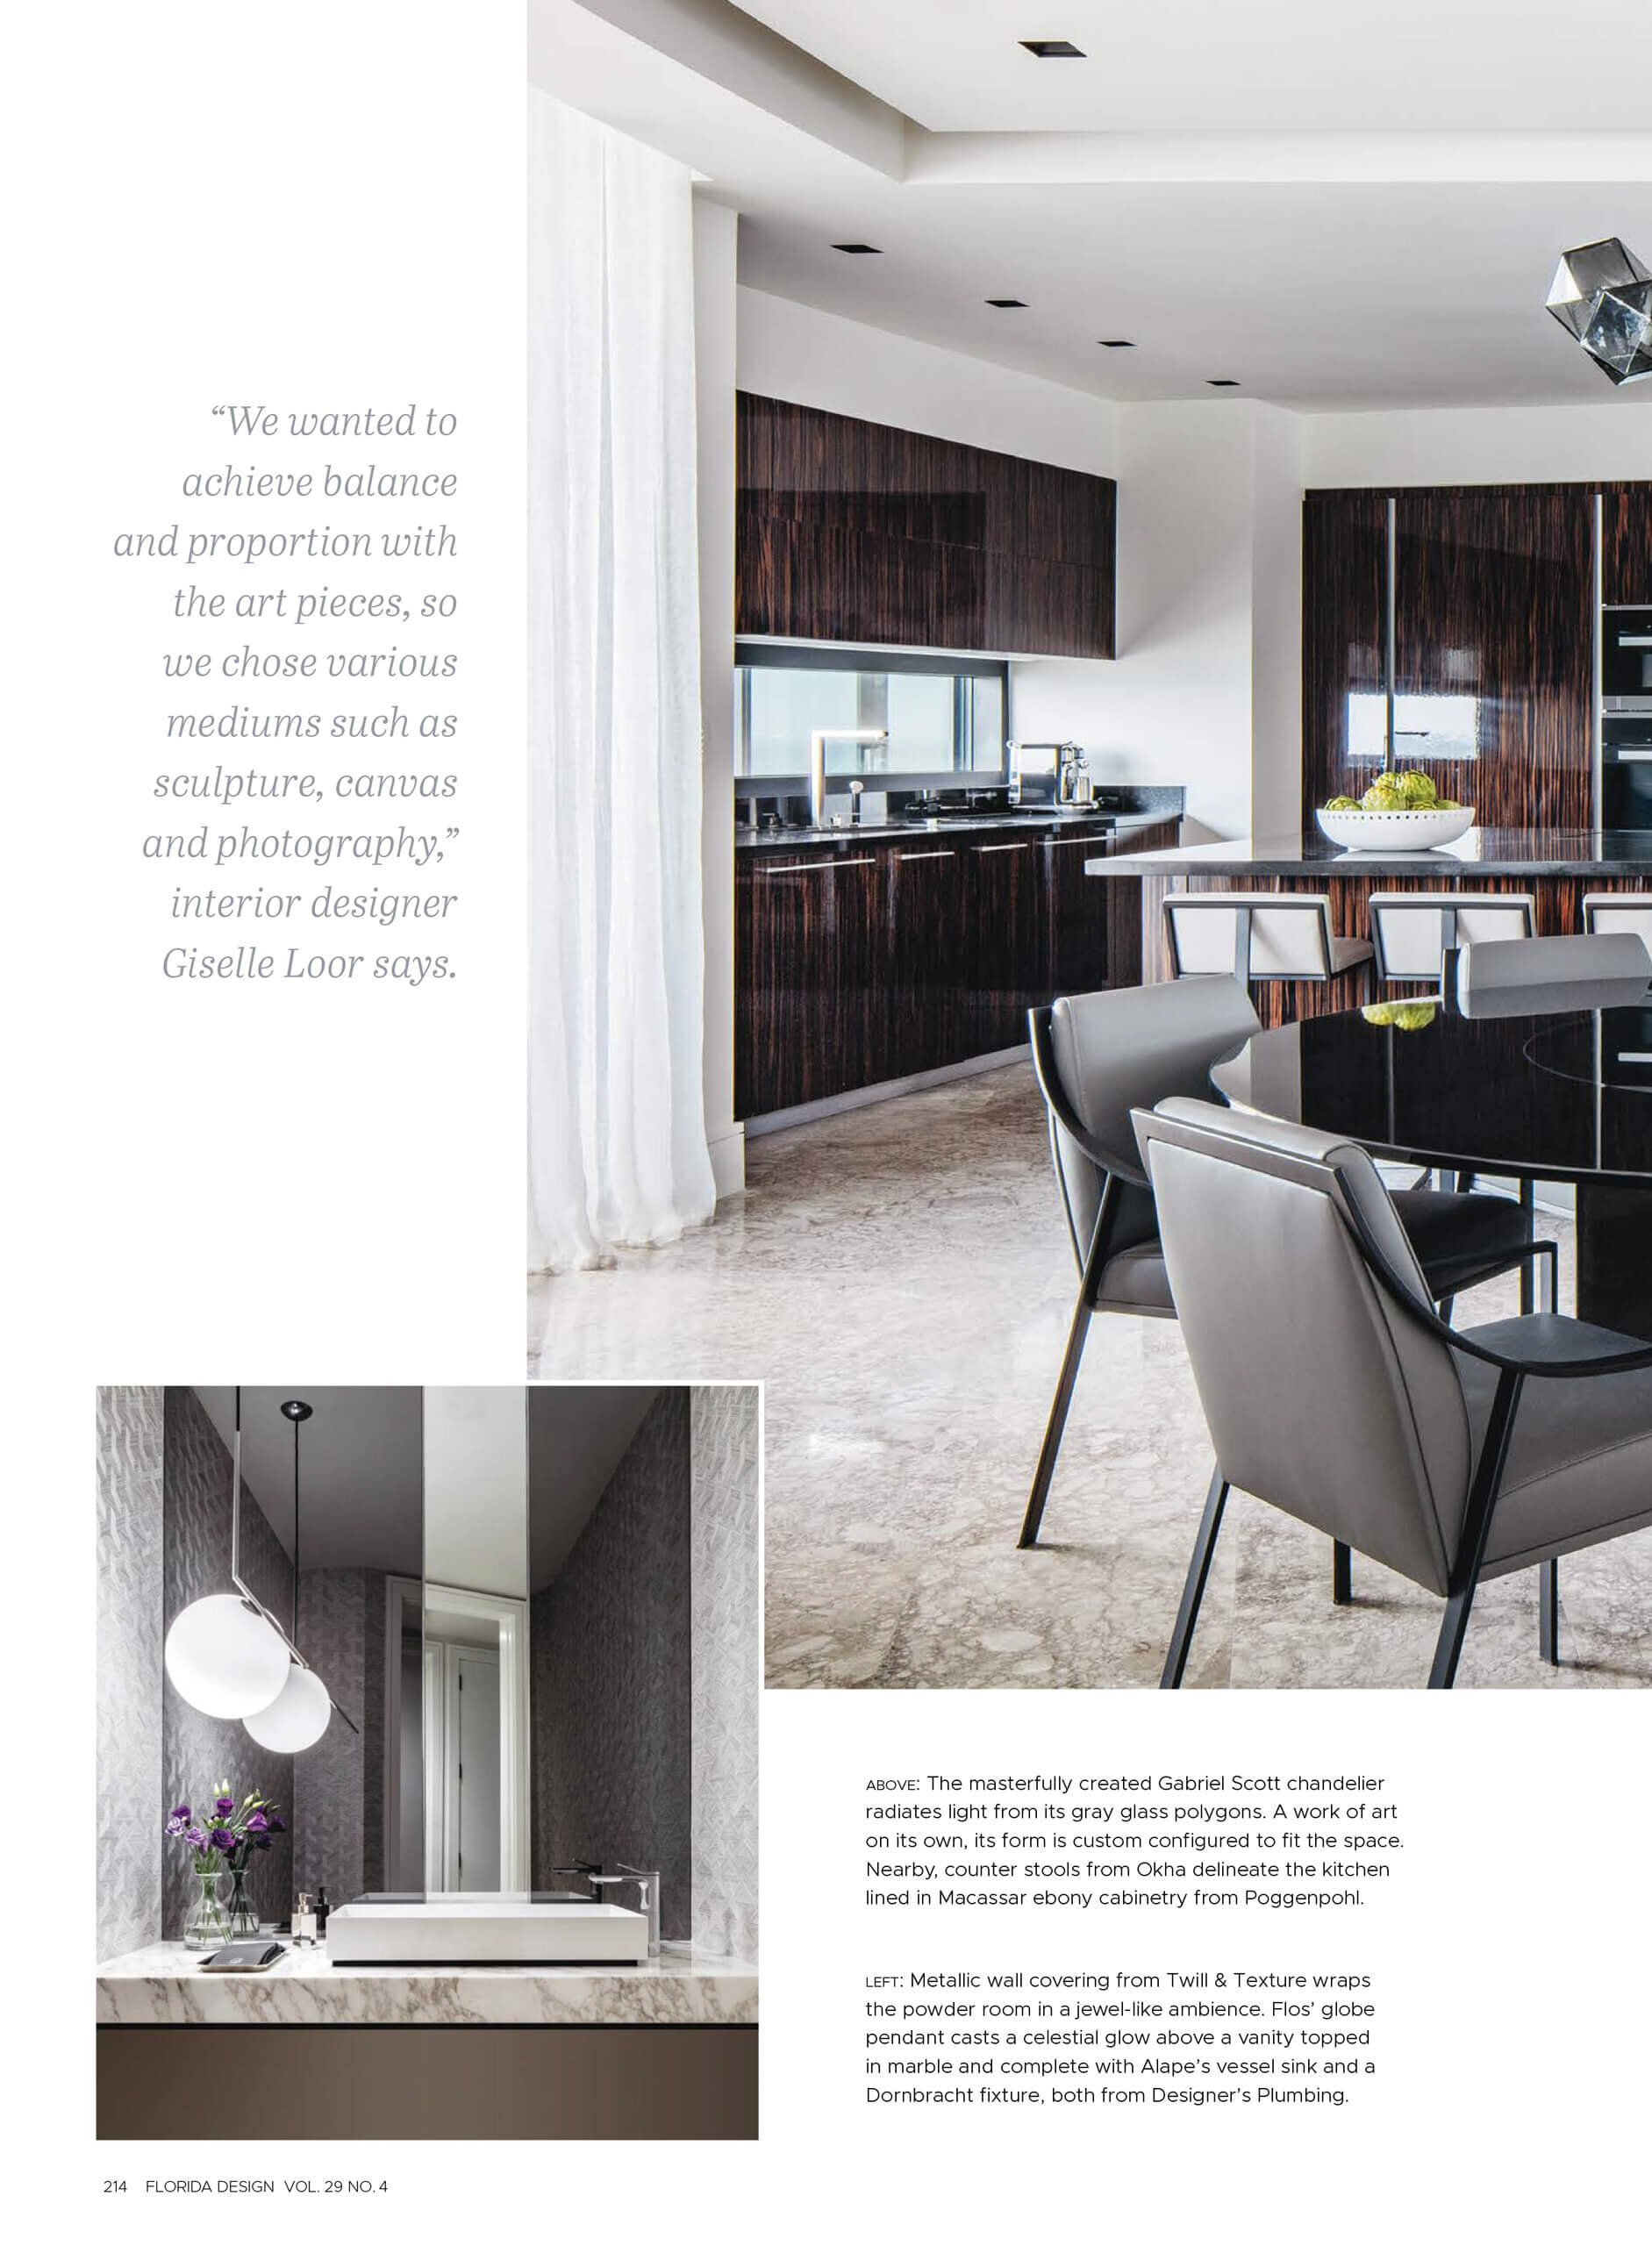 B G Design Inc Luxury Interior Design Miami